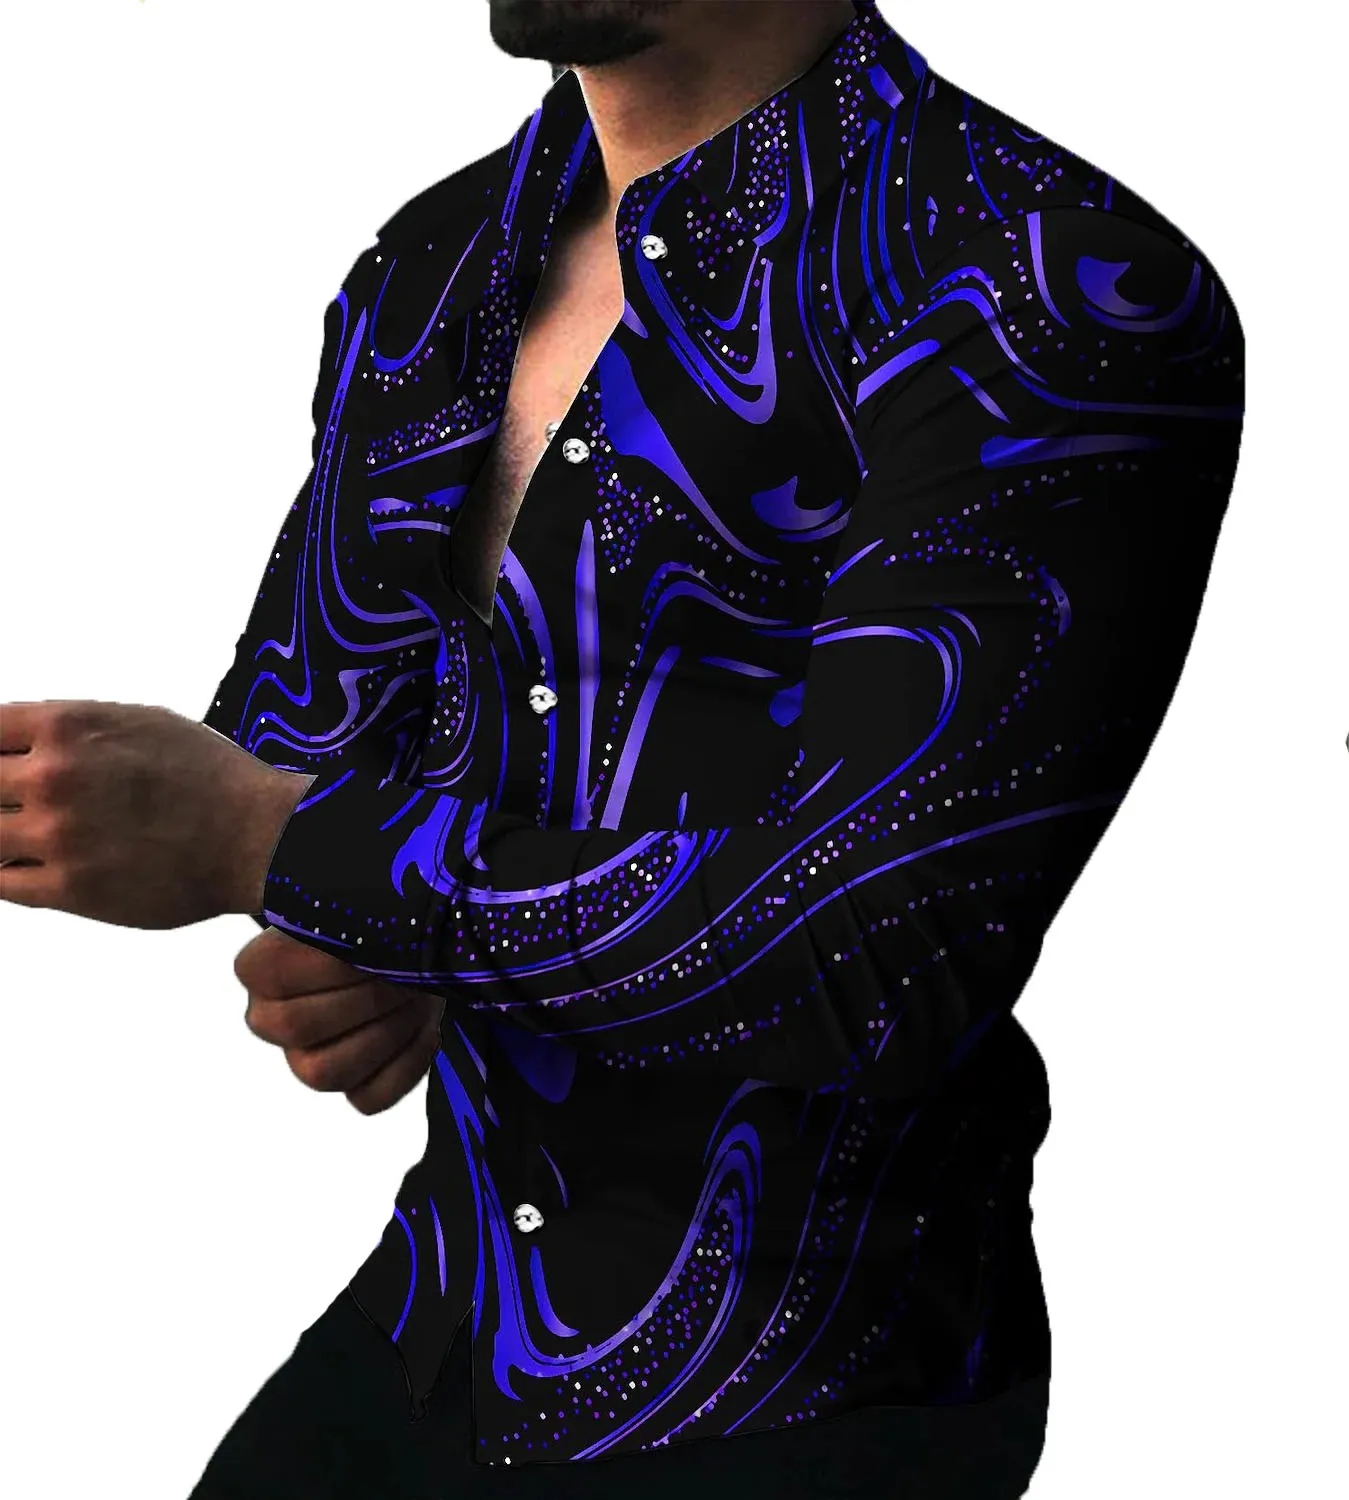 Hommes Casual camisa grande taille chemises vêtements 3xl 5xl haut à pois Blouse motif géométrique Hawaii à manches longues haute qualité bouton Blouse hauts